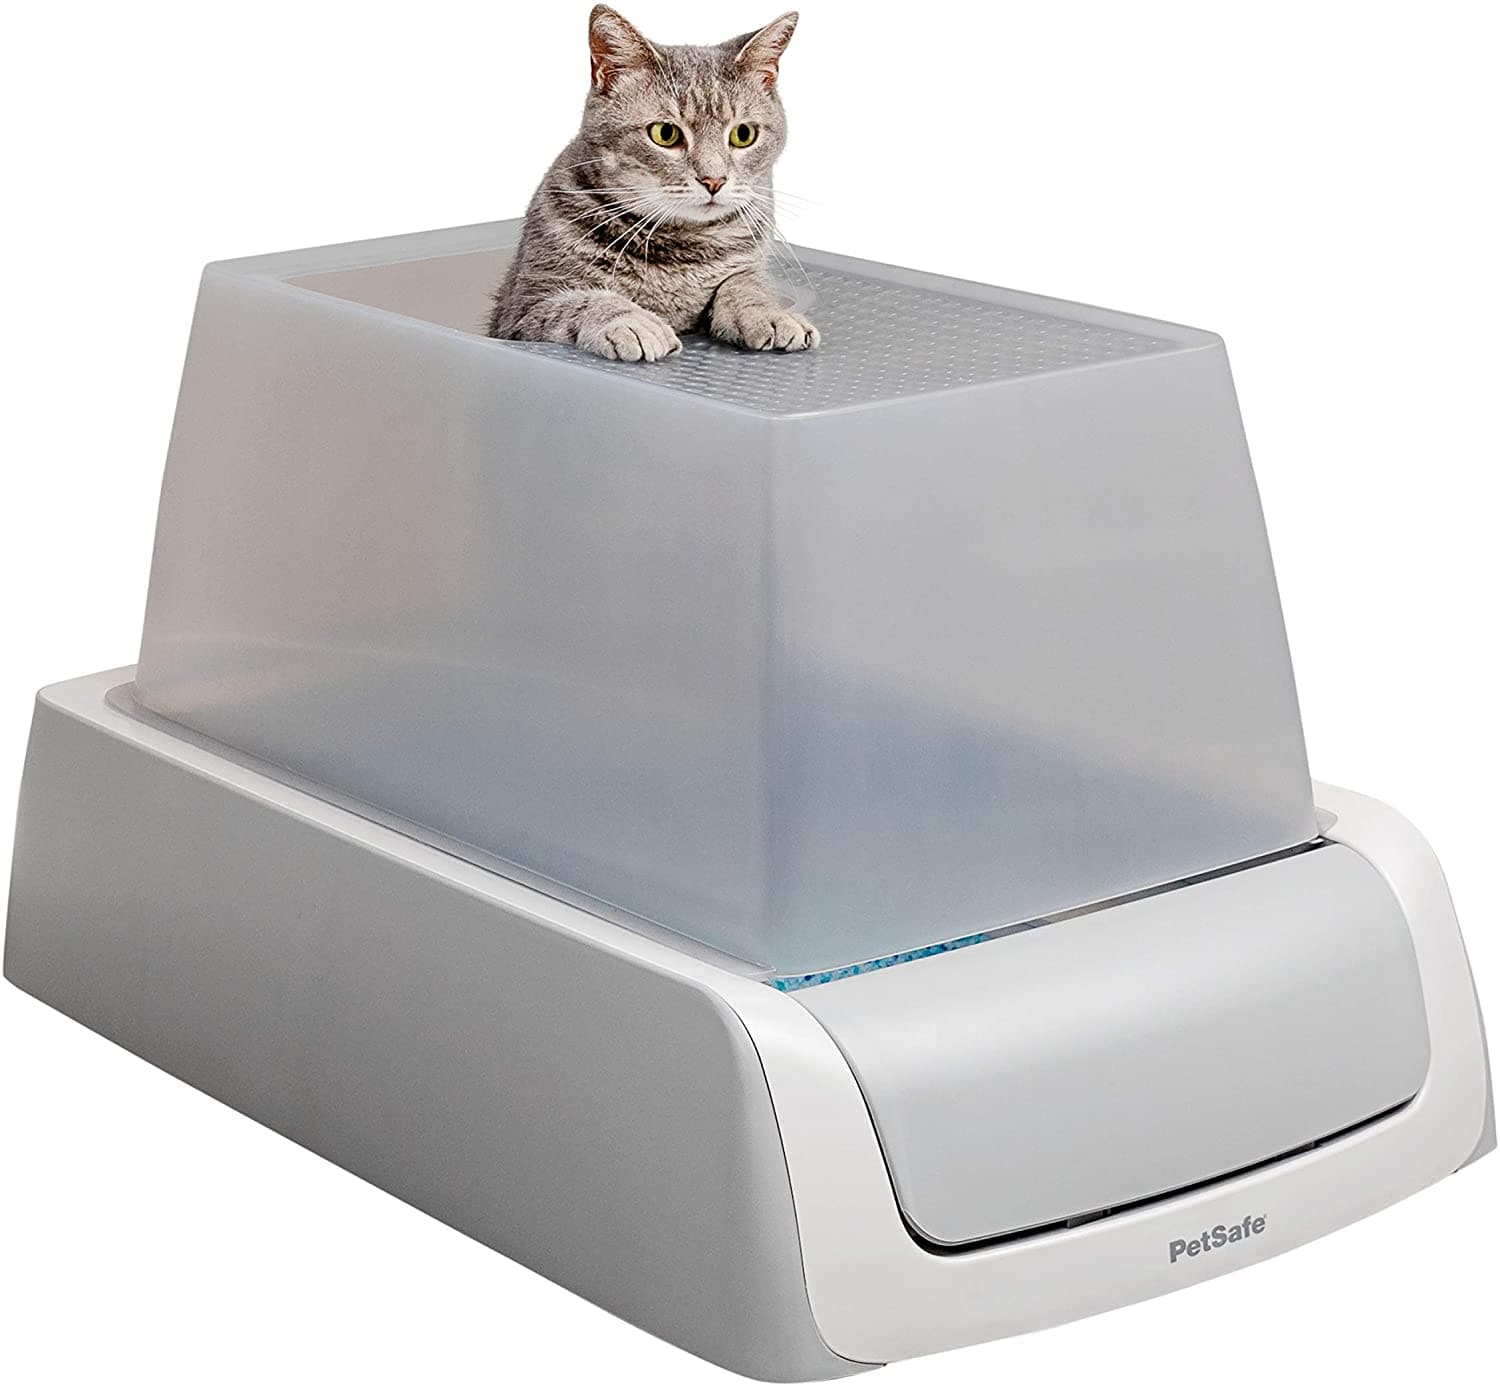 Pet Supplies Panamá - ¡Nuevo modelo de Porta Arenero! 🐈 • Si prefieres  guardar el arenero de tu gato en un mueble colocó, practico y discreto en  tu sala, esta es la